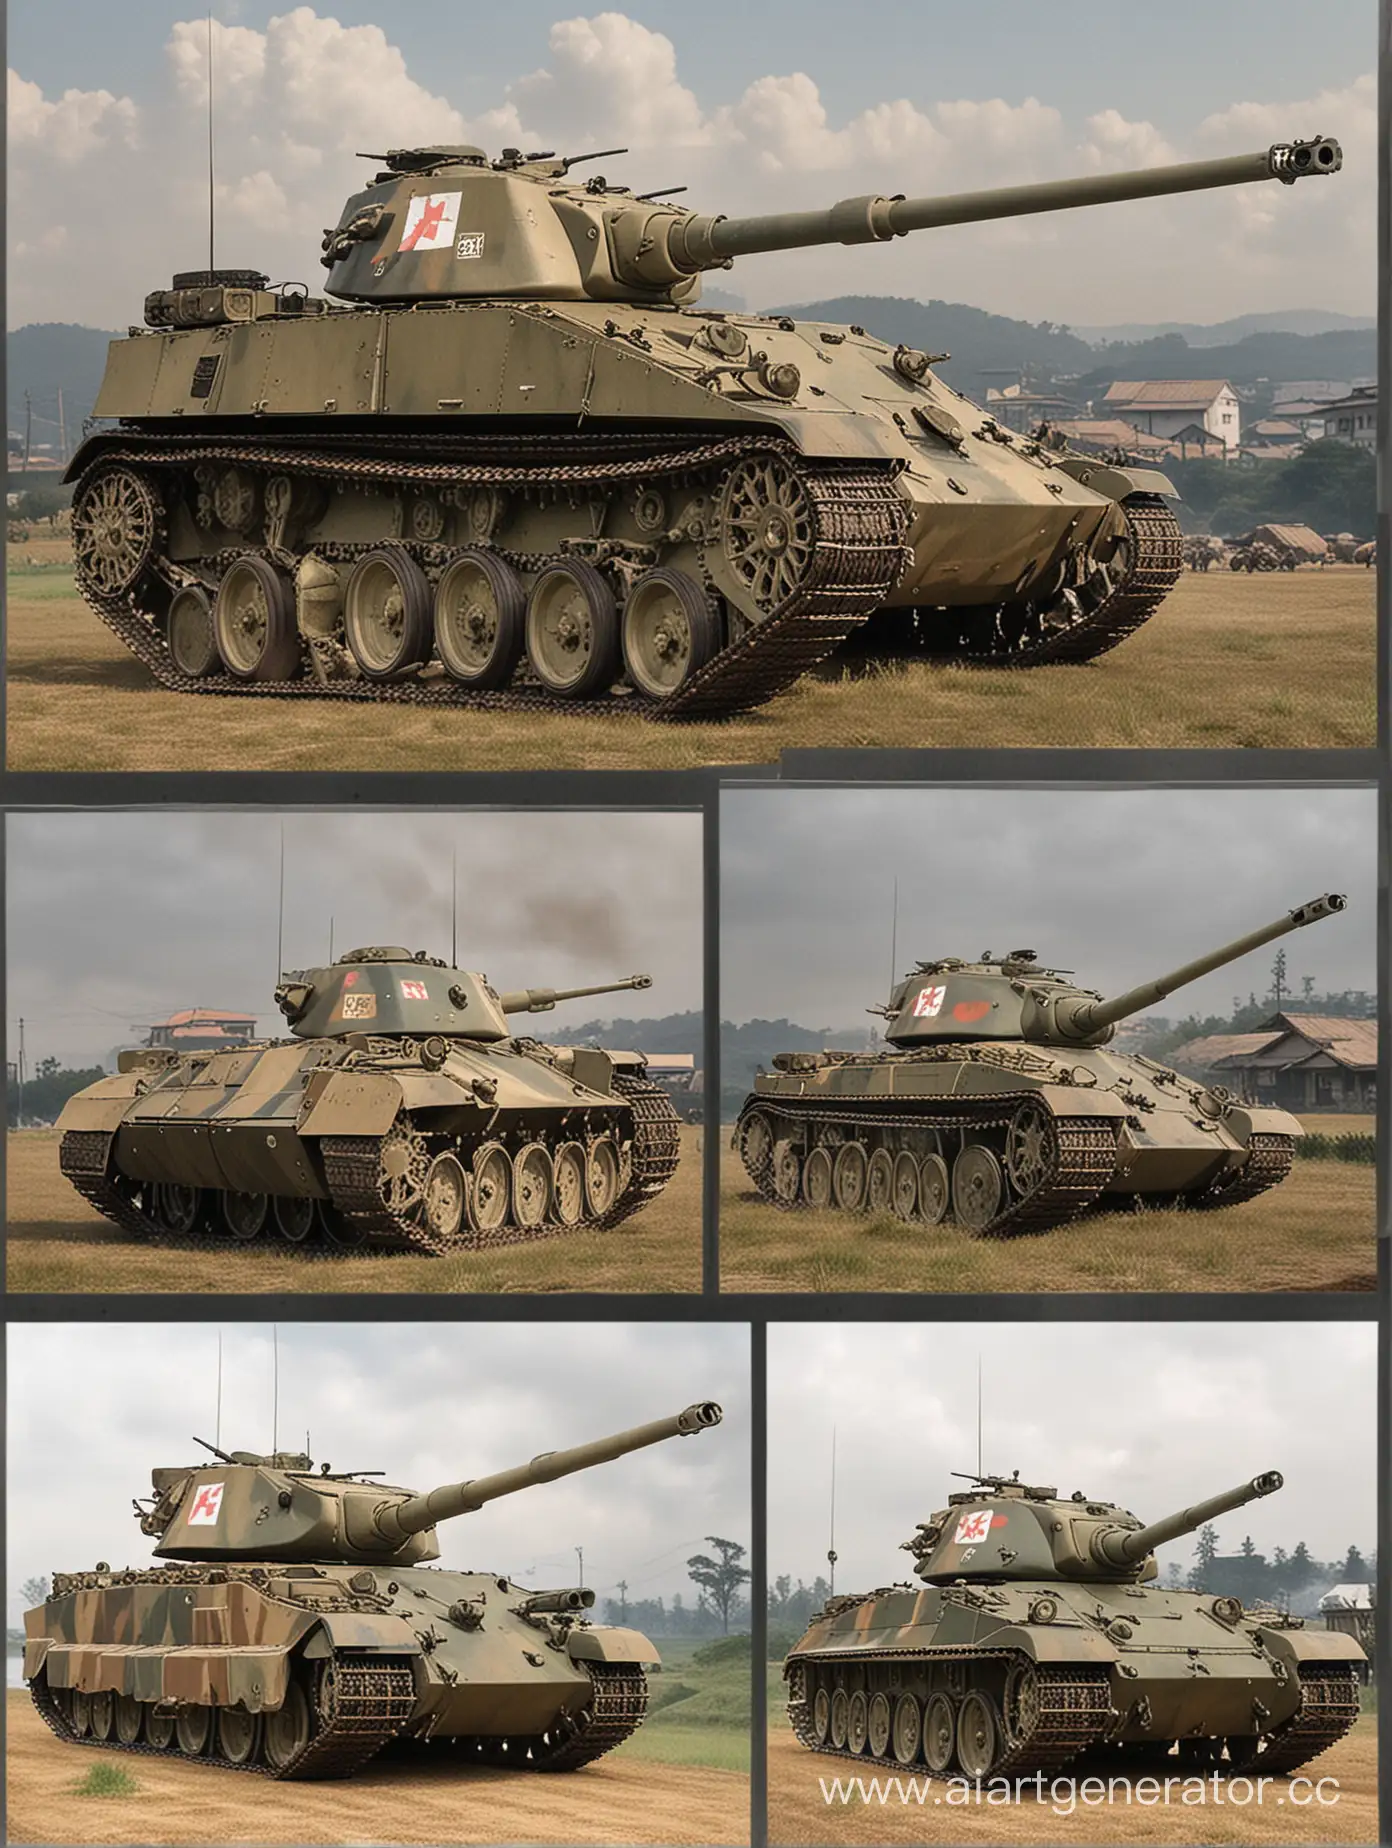 тяжелый танк японии по типу "type 97 chi-ha" с чертами немецких танков по типу "king tiger" или "maus", учитывай немекие черты такие как толстая броня и острые углы, но так же учитывай японские черты, простые круглые башни, и сама конструкция тоже простая,танк должен быть большой